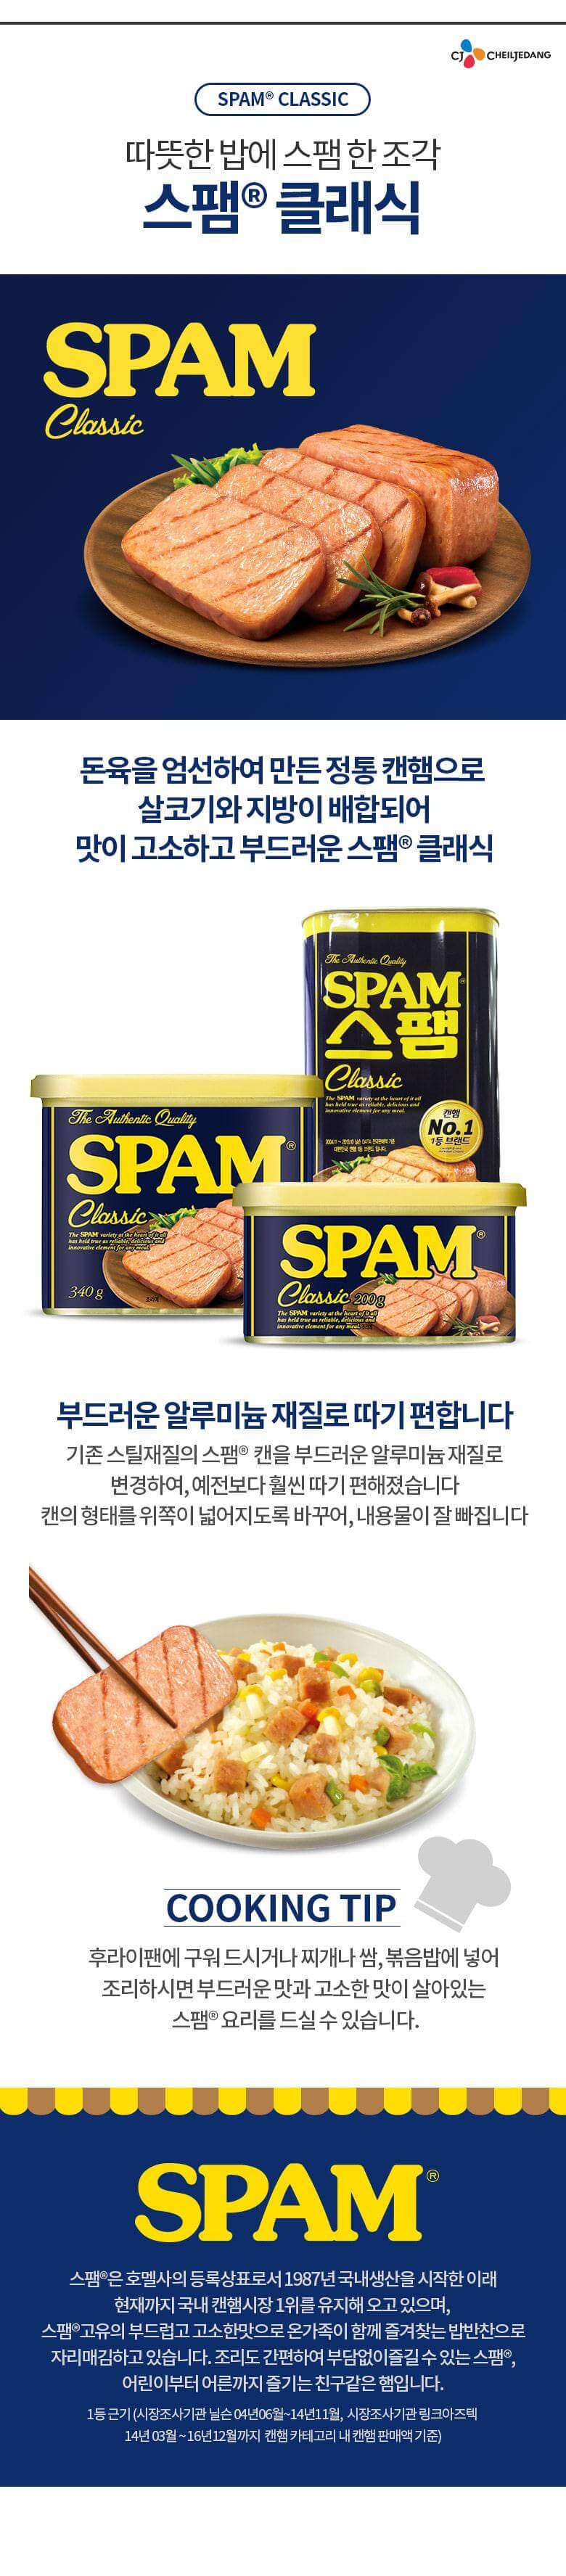 韓國食品-[CJ] 스팸[클래식] 300g